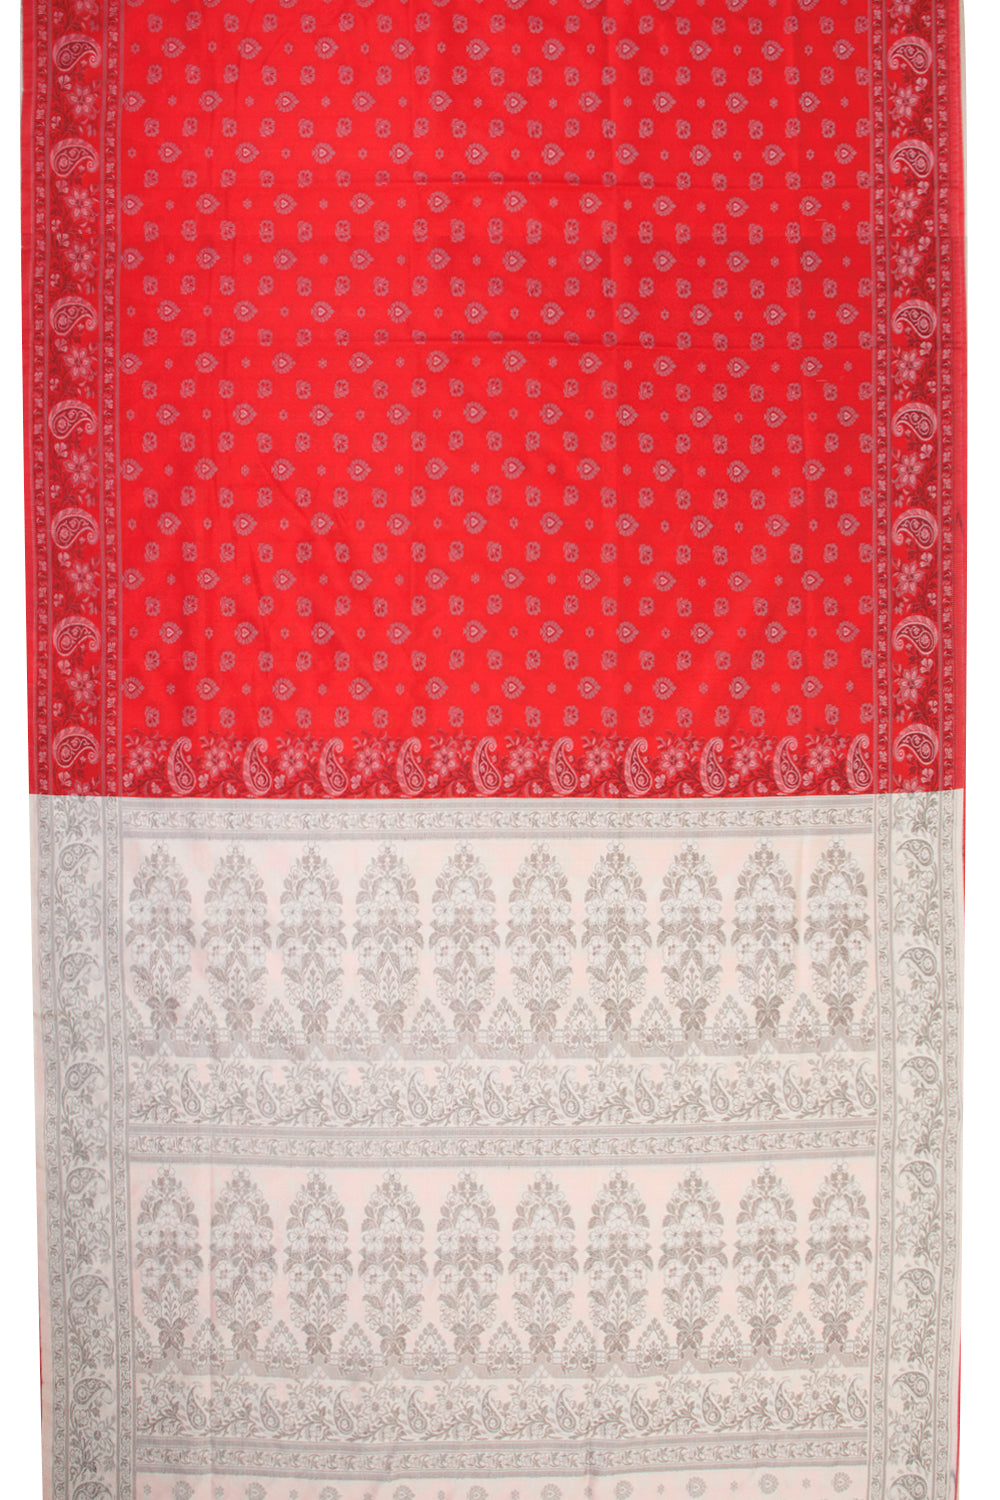 Red Handloom Himroo Silk Cotton Saree - Avishya